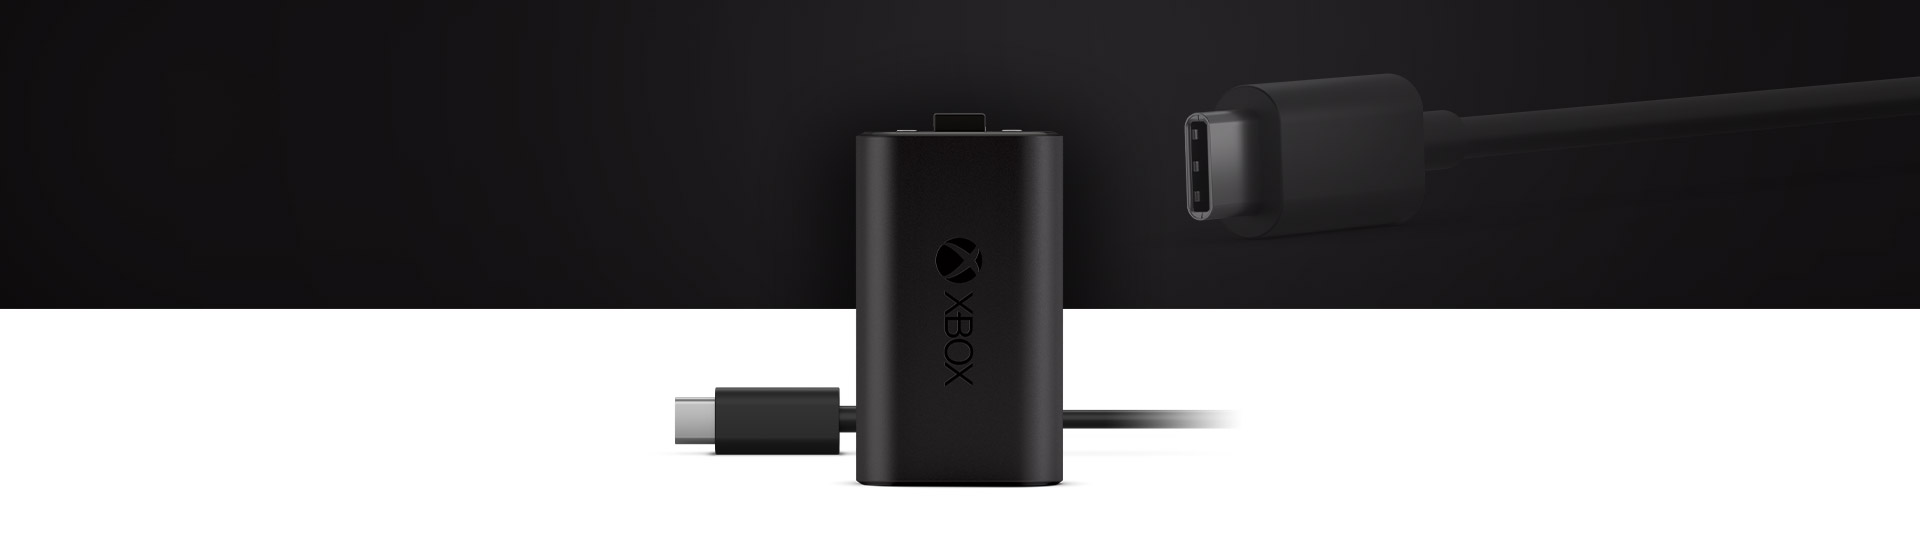 Επαναφορτιζόμενη μπαταρία Xbox + Καλώδιο USB-C® με κοντινή όψη του καλωδίου USB-C®